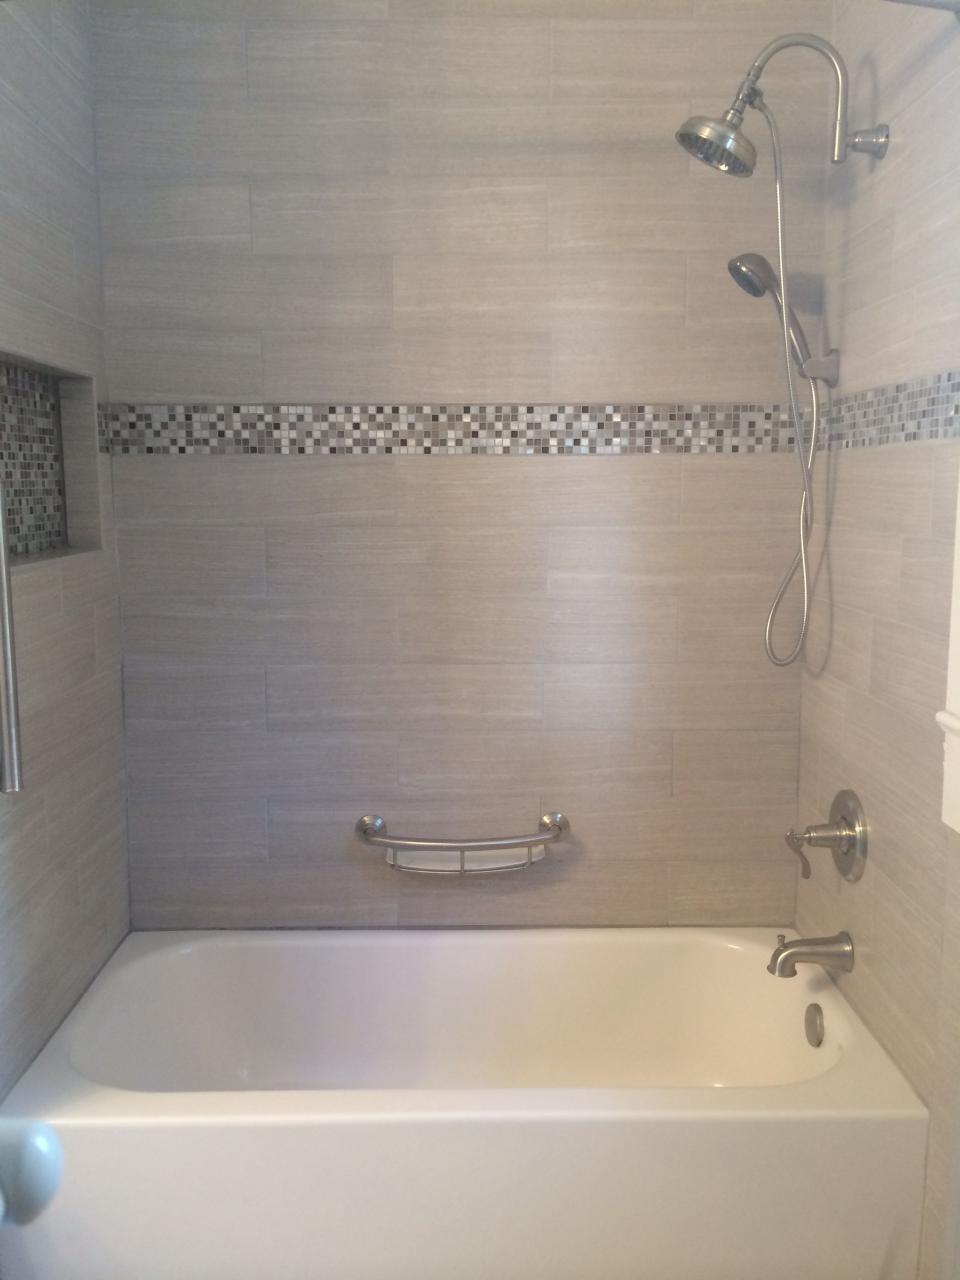 Tile tub surround. Gray tile around bathtub. Grey tile around bathtub